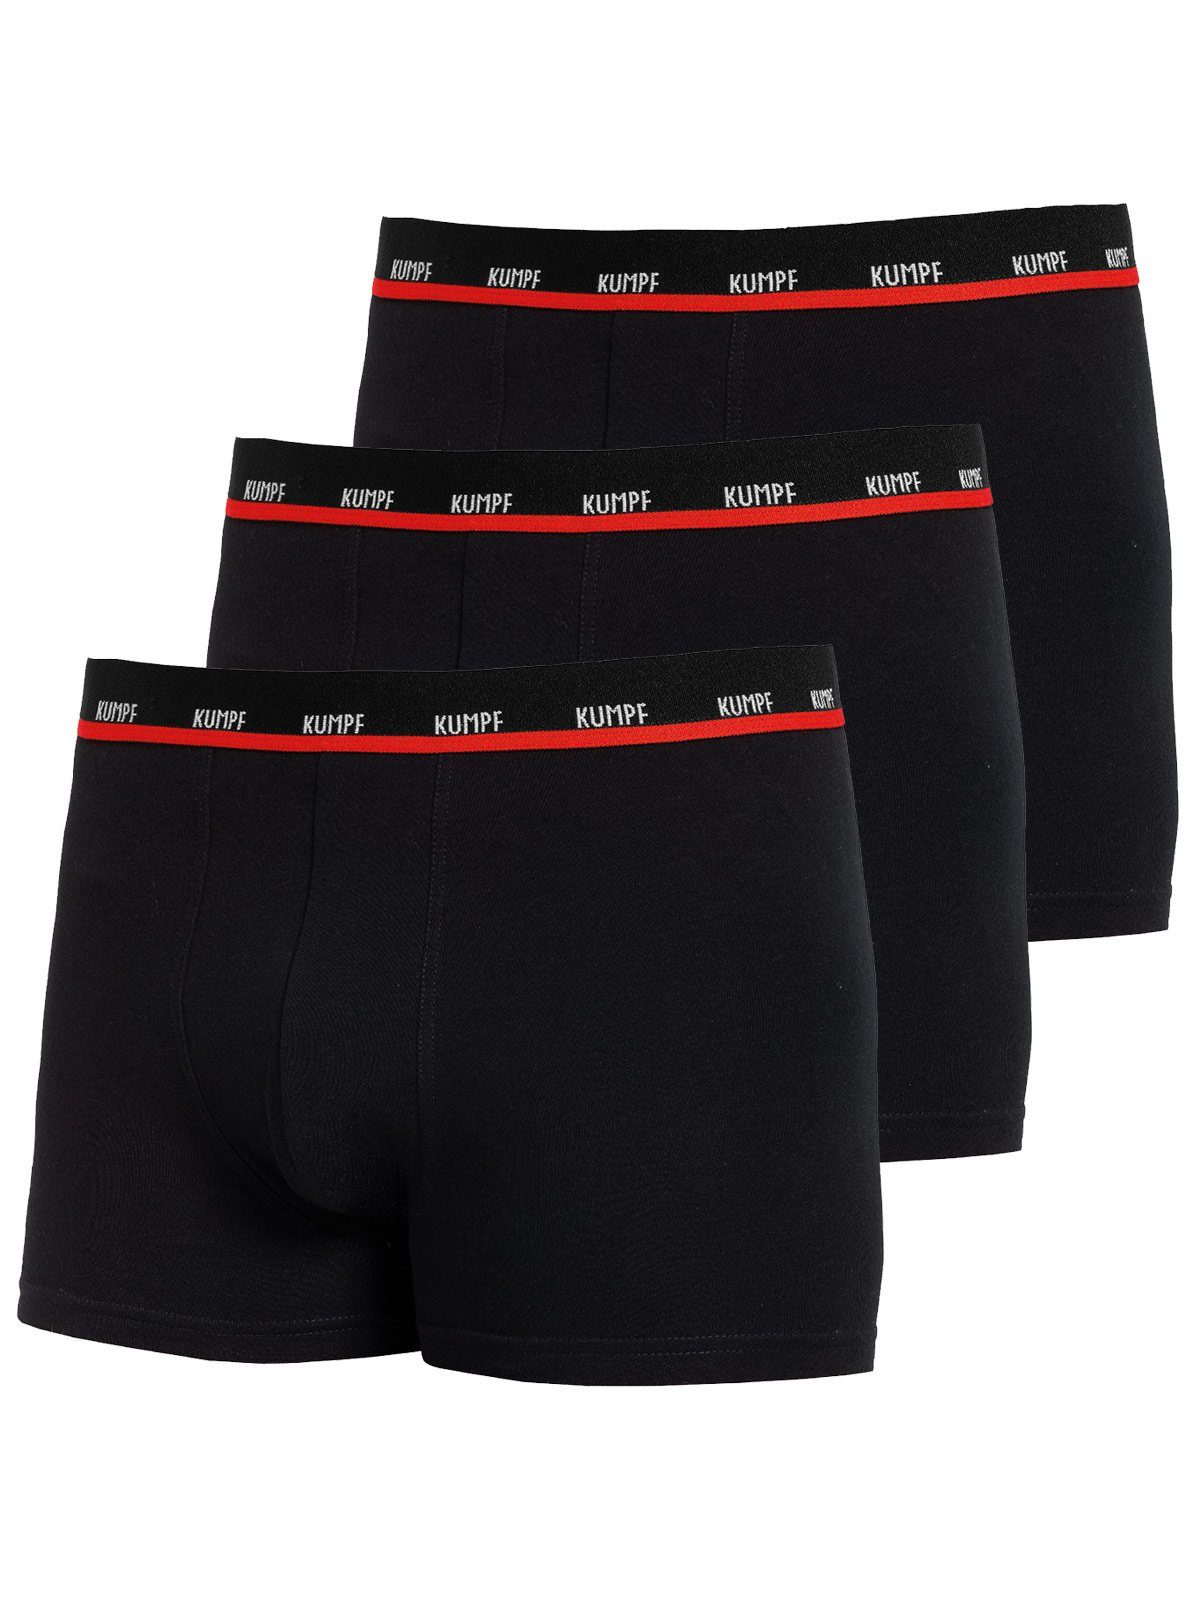 KUMPF Retro Pants Stretch Cotton 3-St) mit Herren (Packung, Pants Materialmix 3er Gummibund schwarz Pack